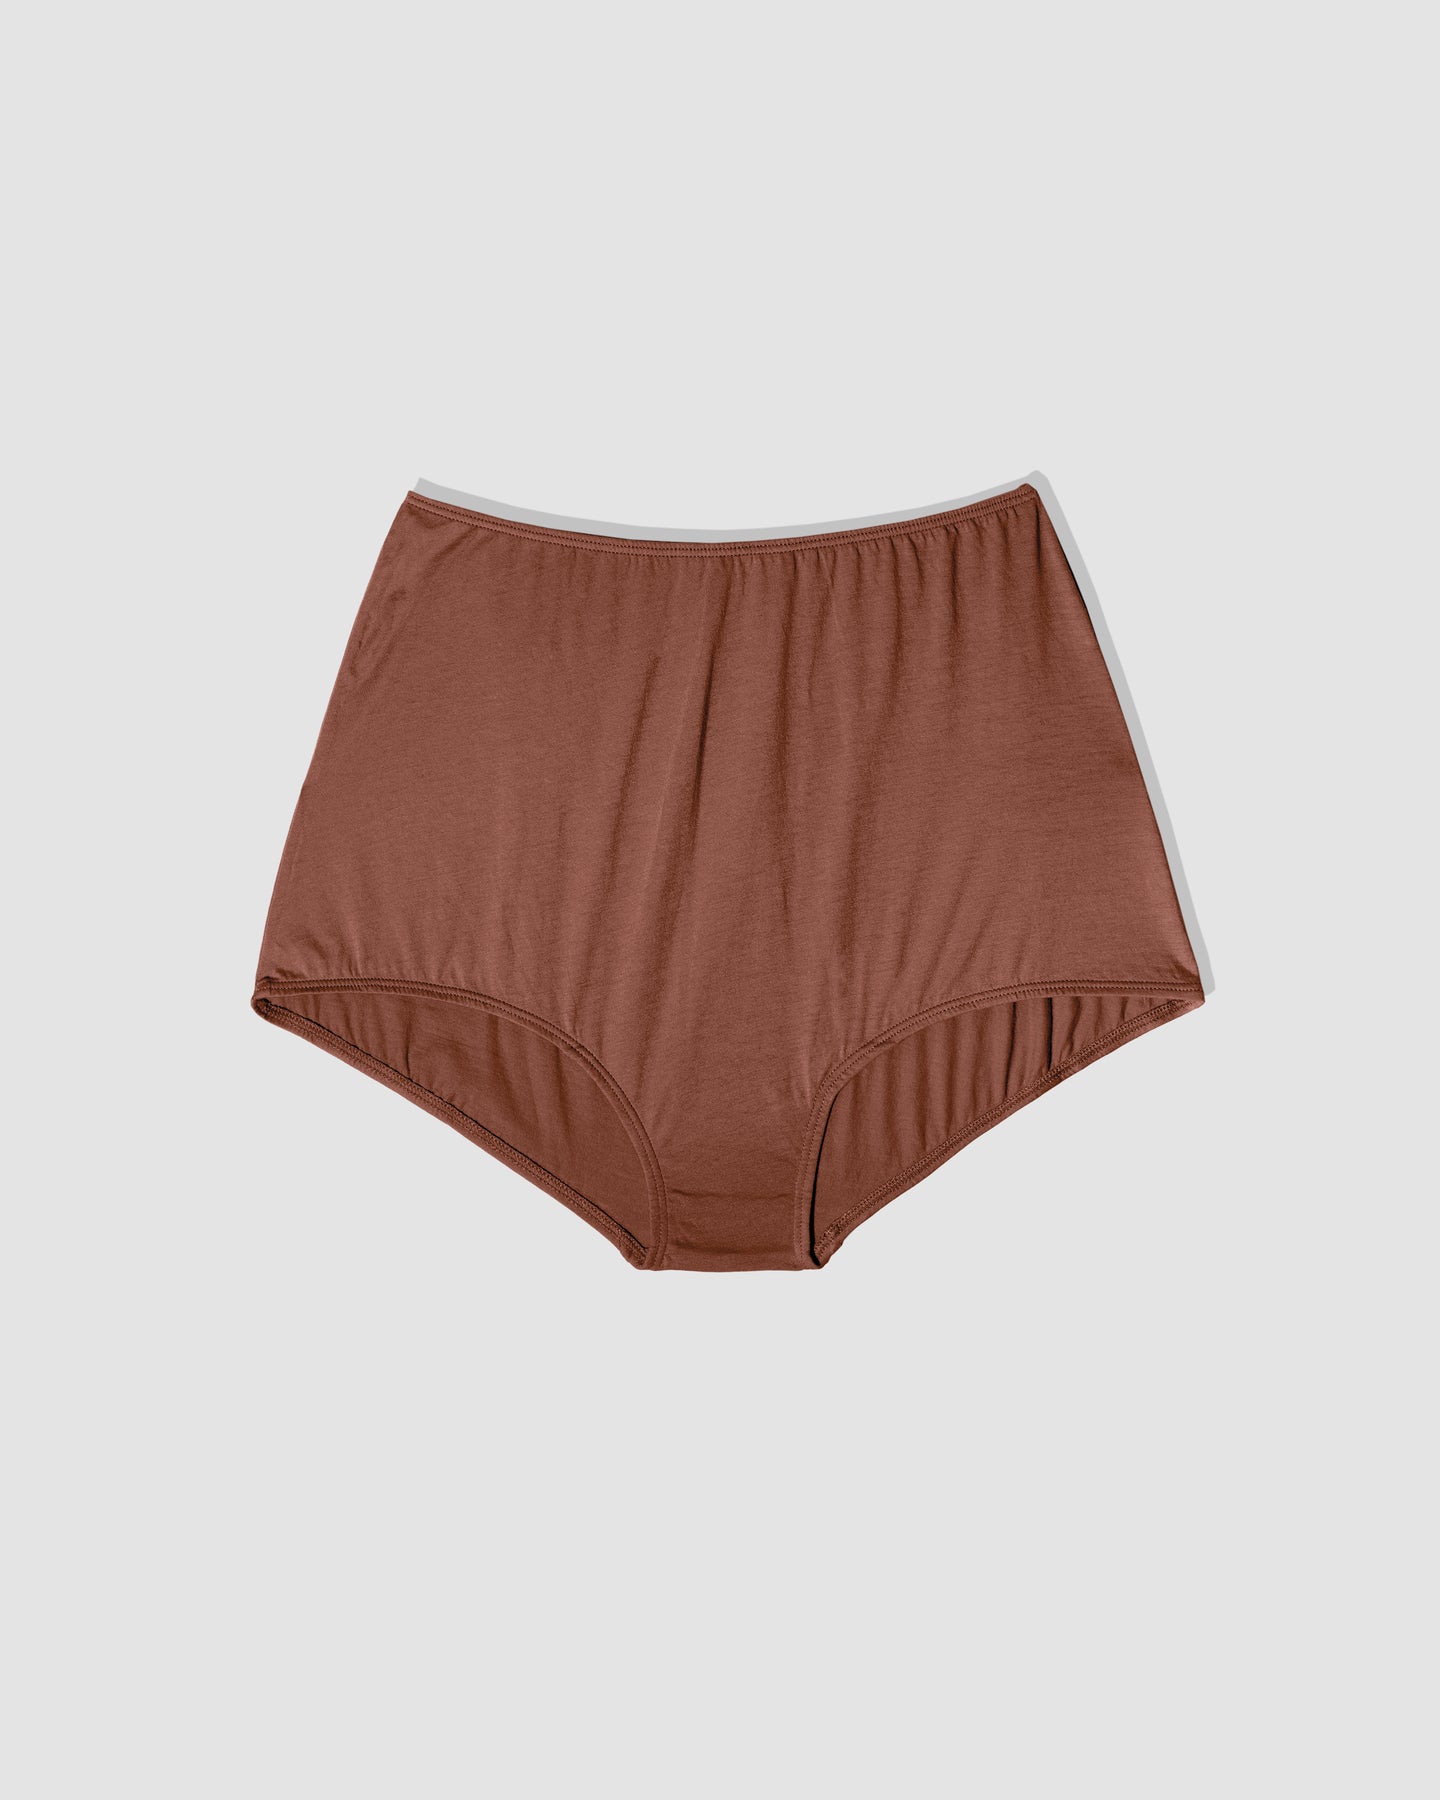 Sexy Women's Underwear Sleeping